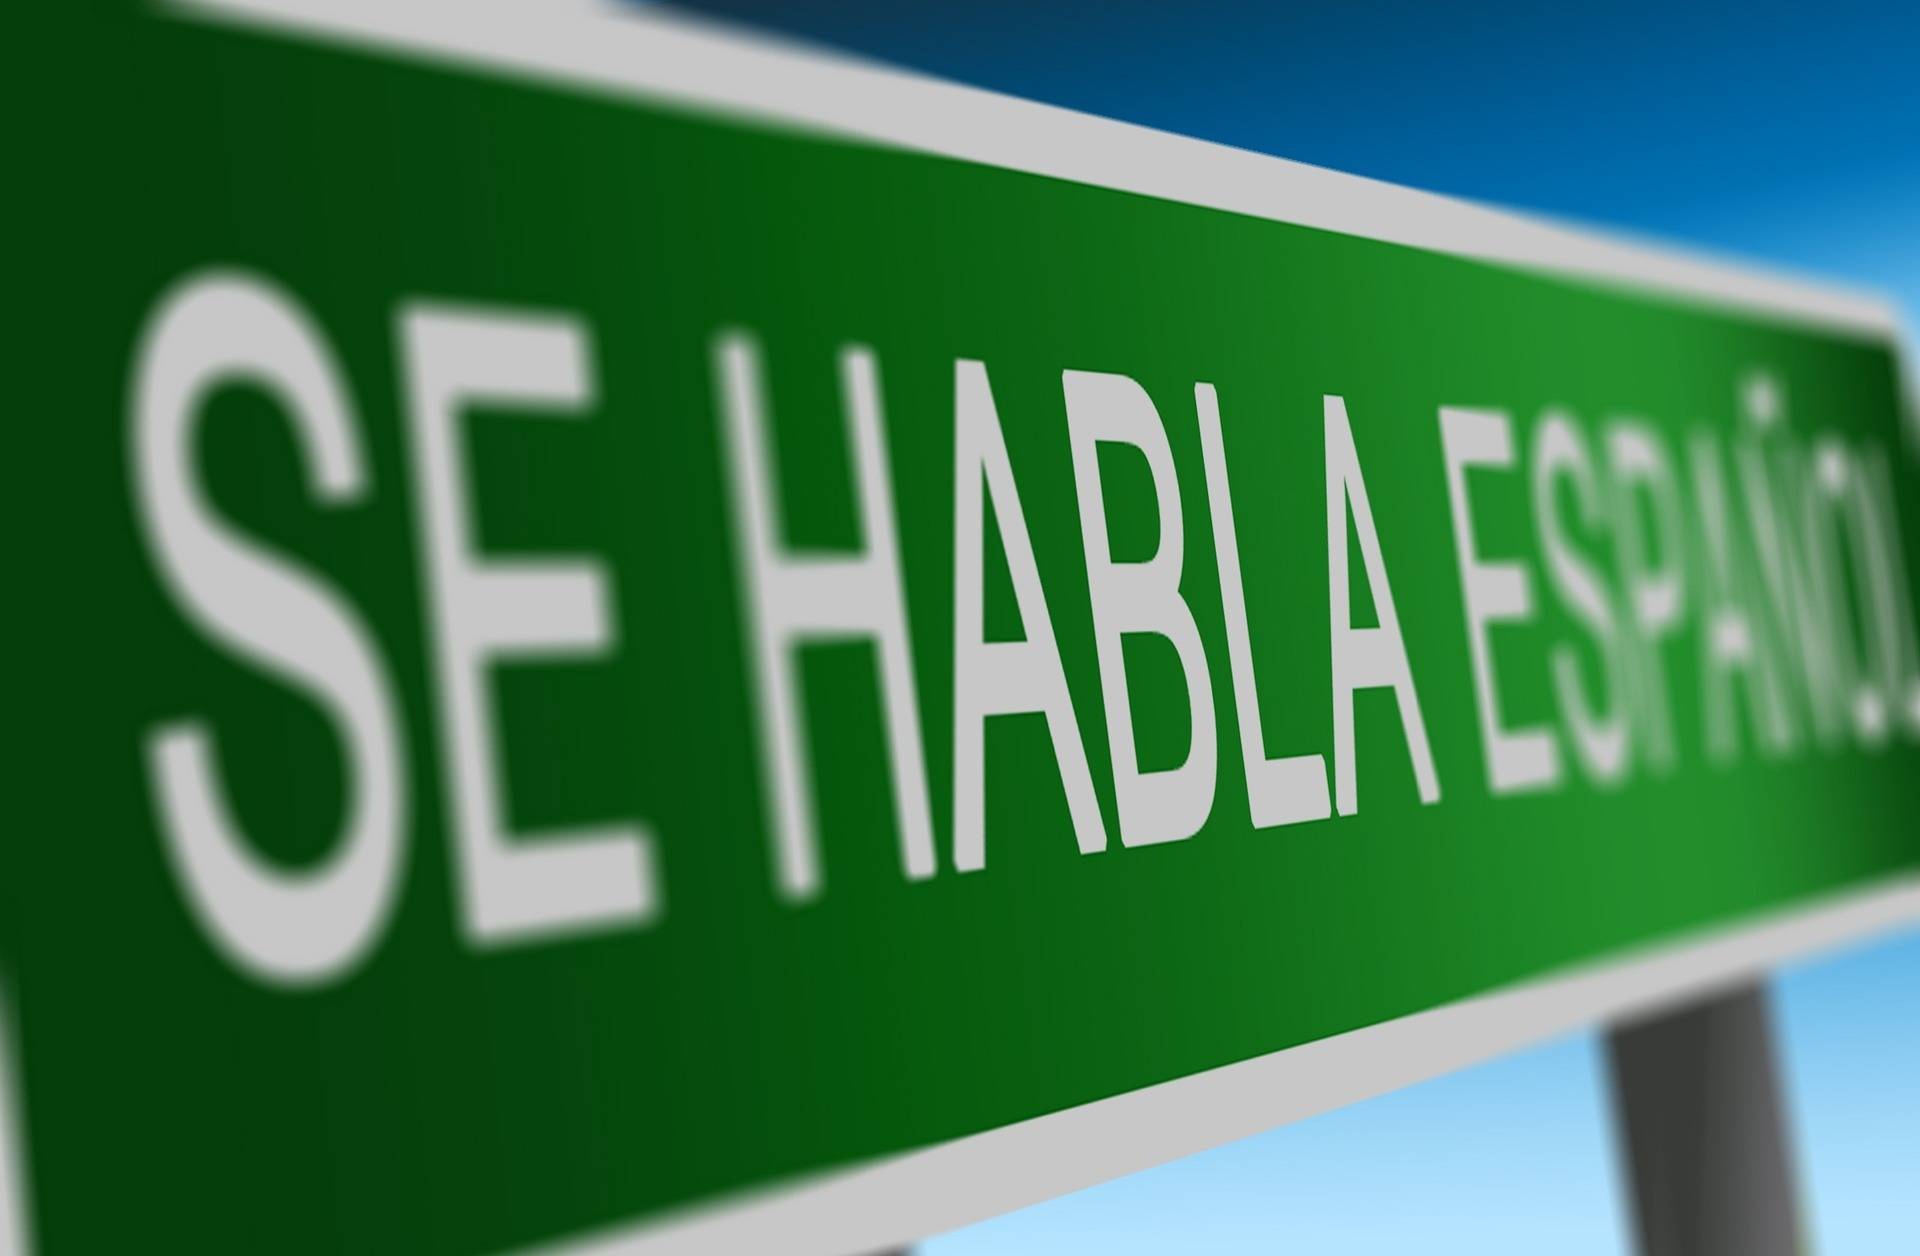 Die Spanisch-Gruppe im Caritas Netzwerk Hochdahl sucht Verstärkung: Nosotros te esperamos